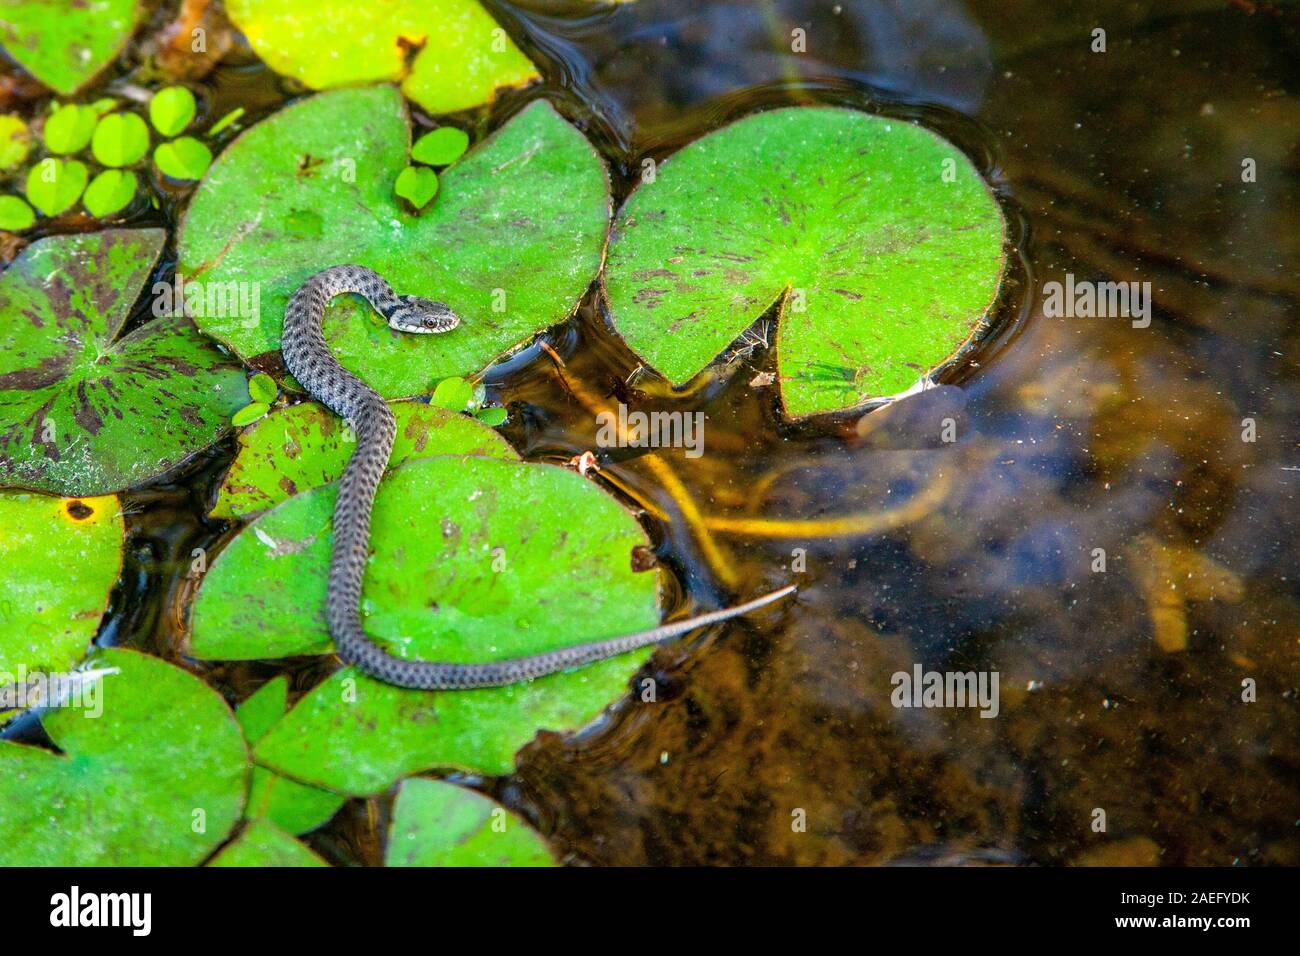 Würfelnatter (Natrix tessellata). Würfel Schlangen sind europäische Nicht-giftige Schlangen, die in der Nähe von Flüssen, Bächen und Seen leben und ernähren sich hauptsächlich von Fisch. Pho Stockfoto